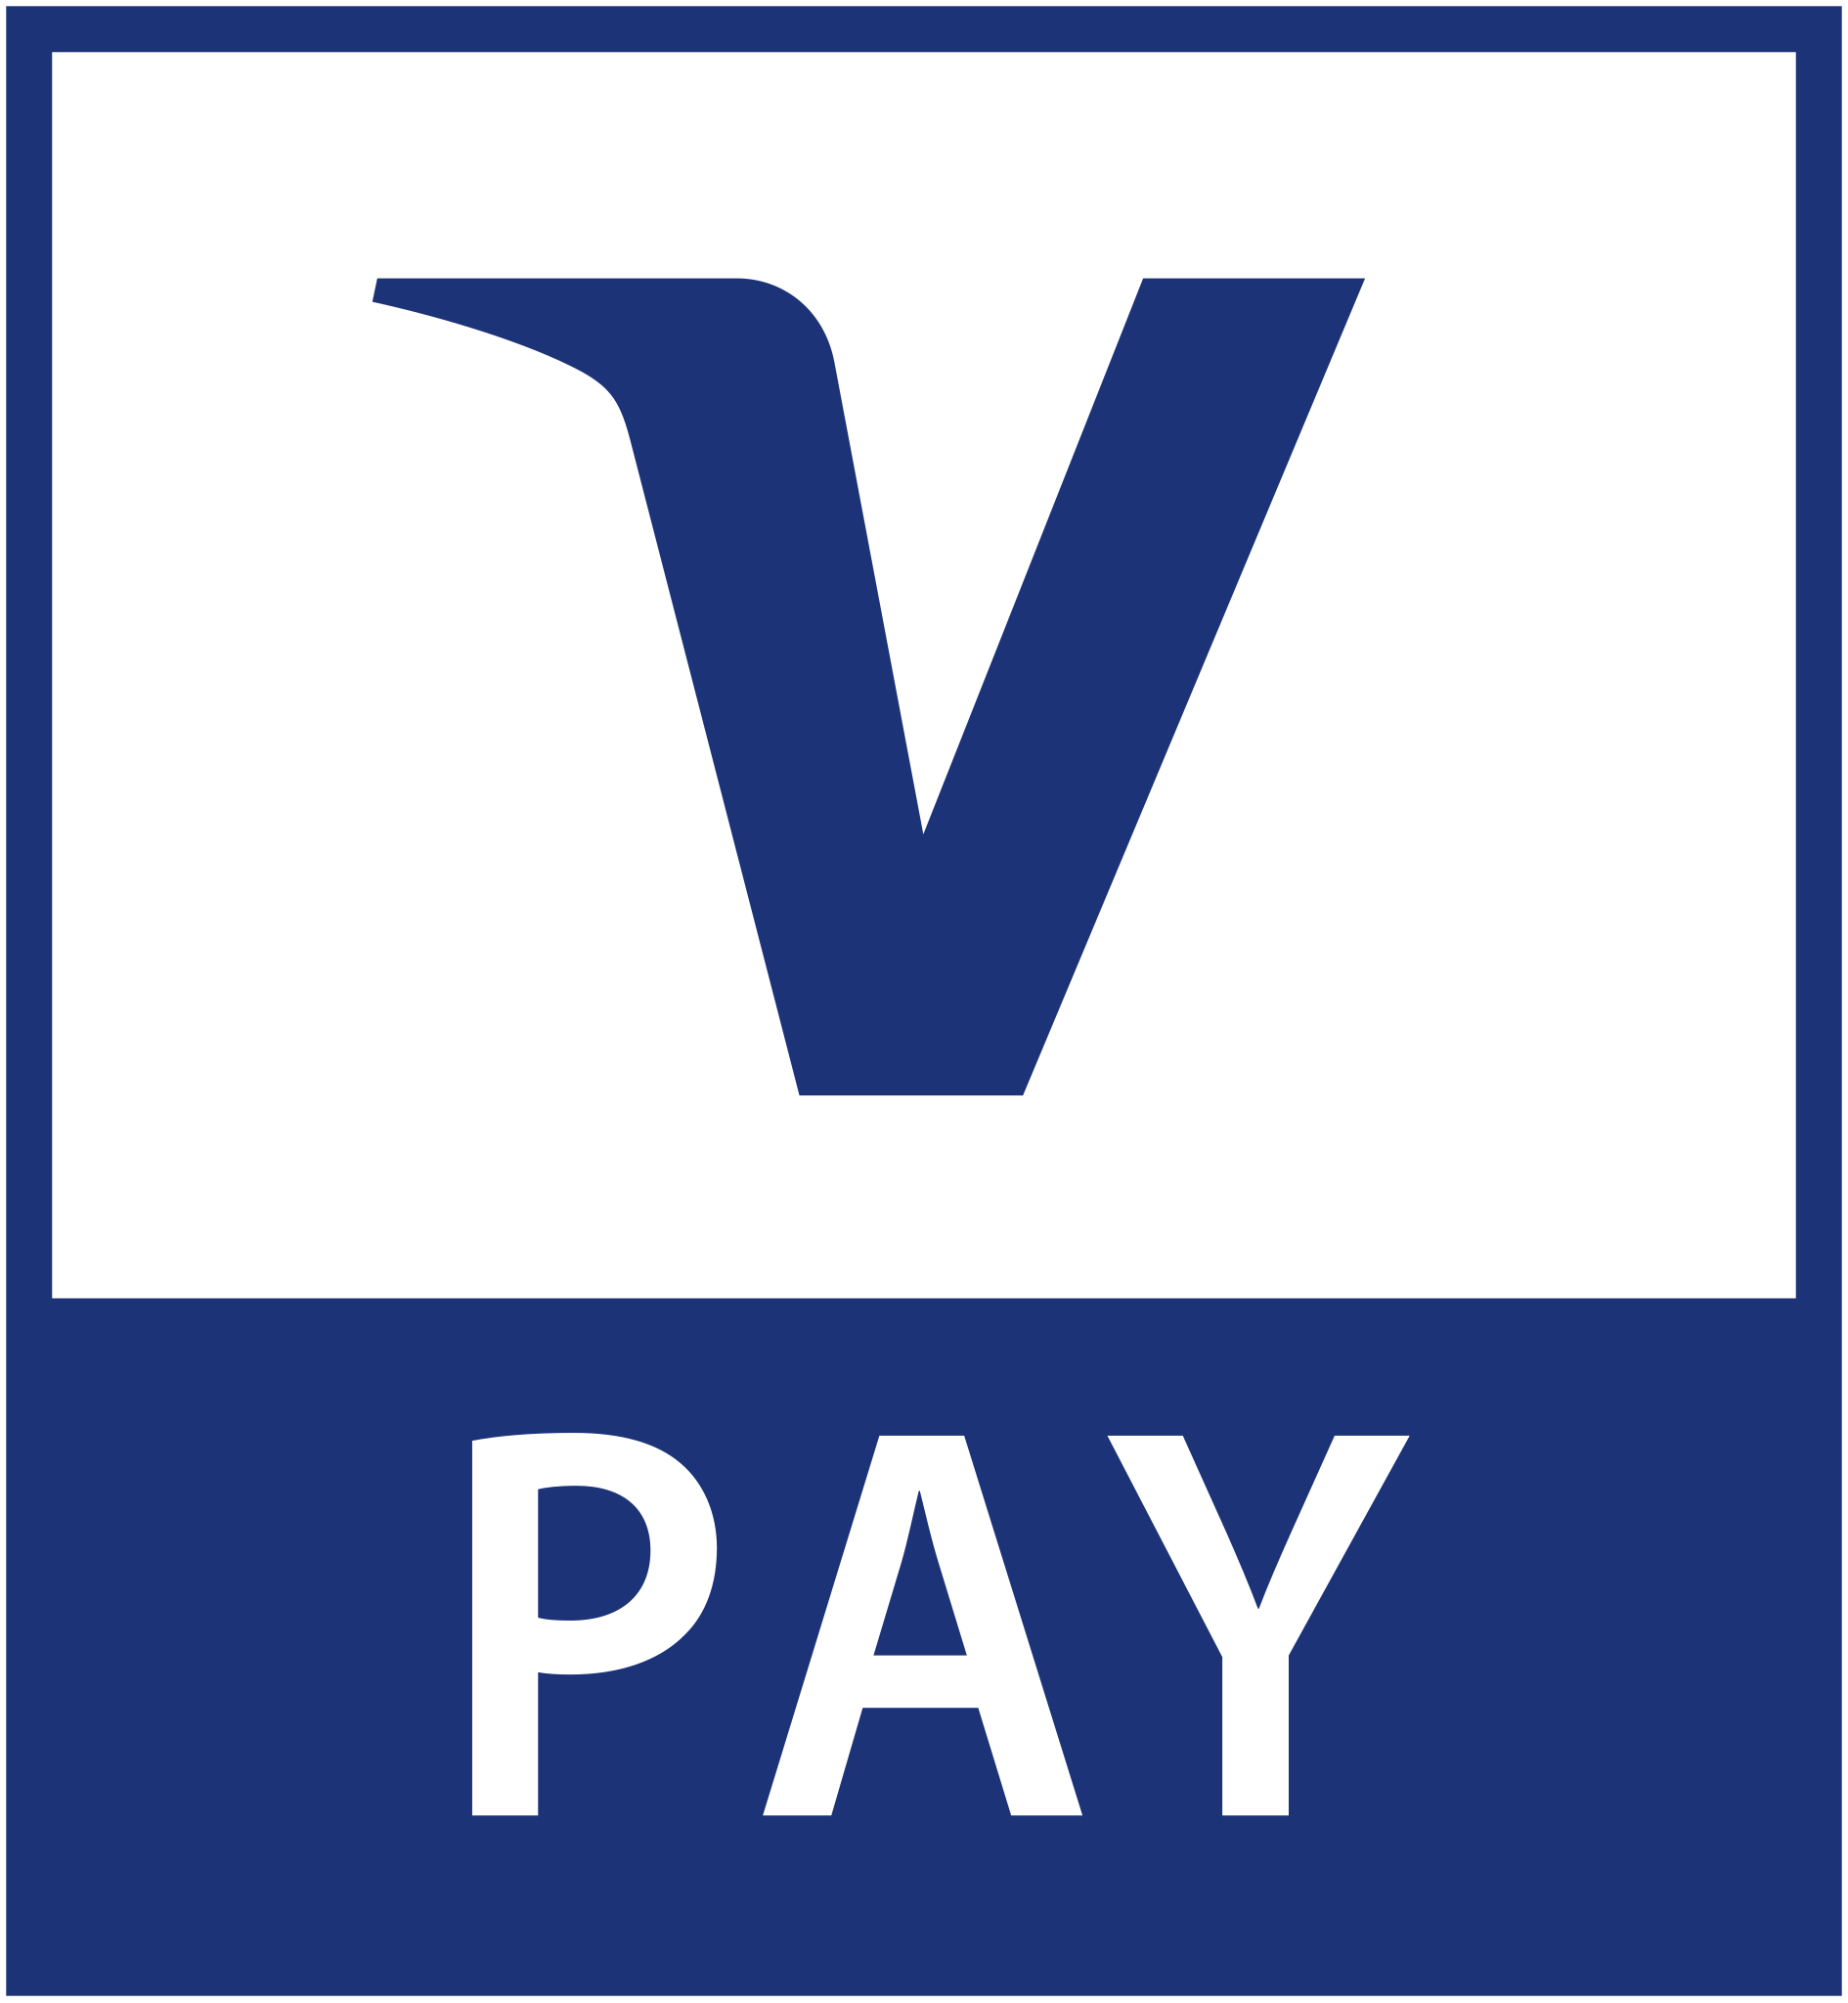 v_pay